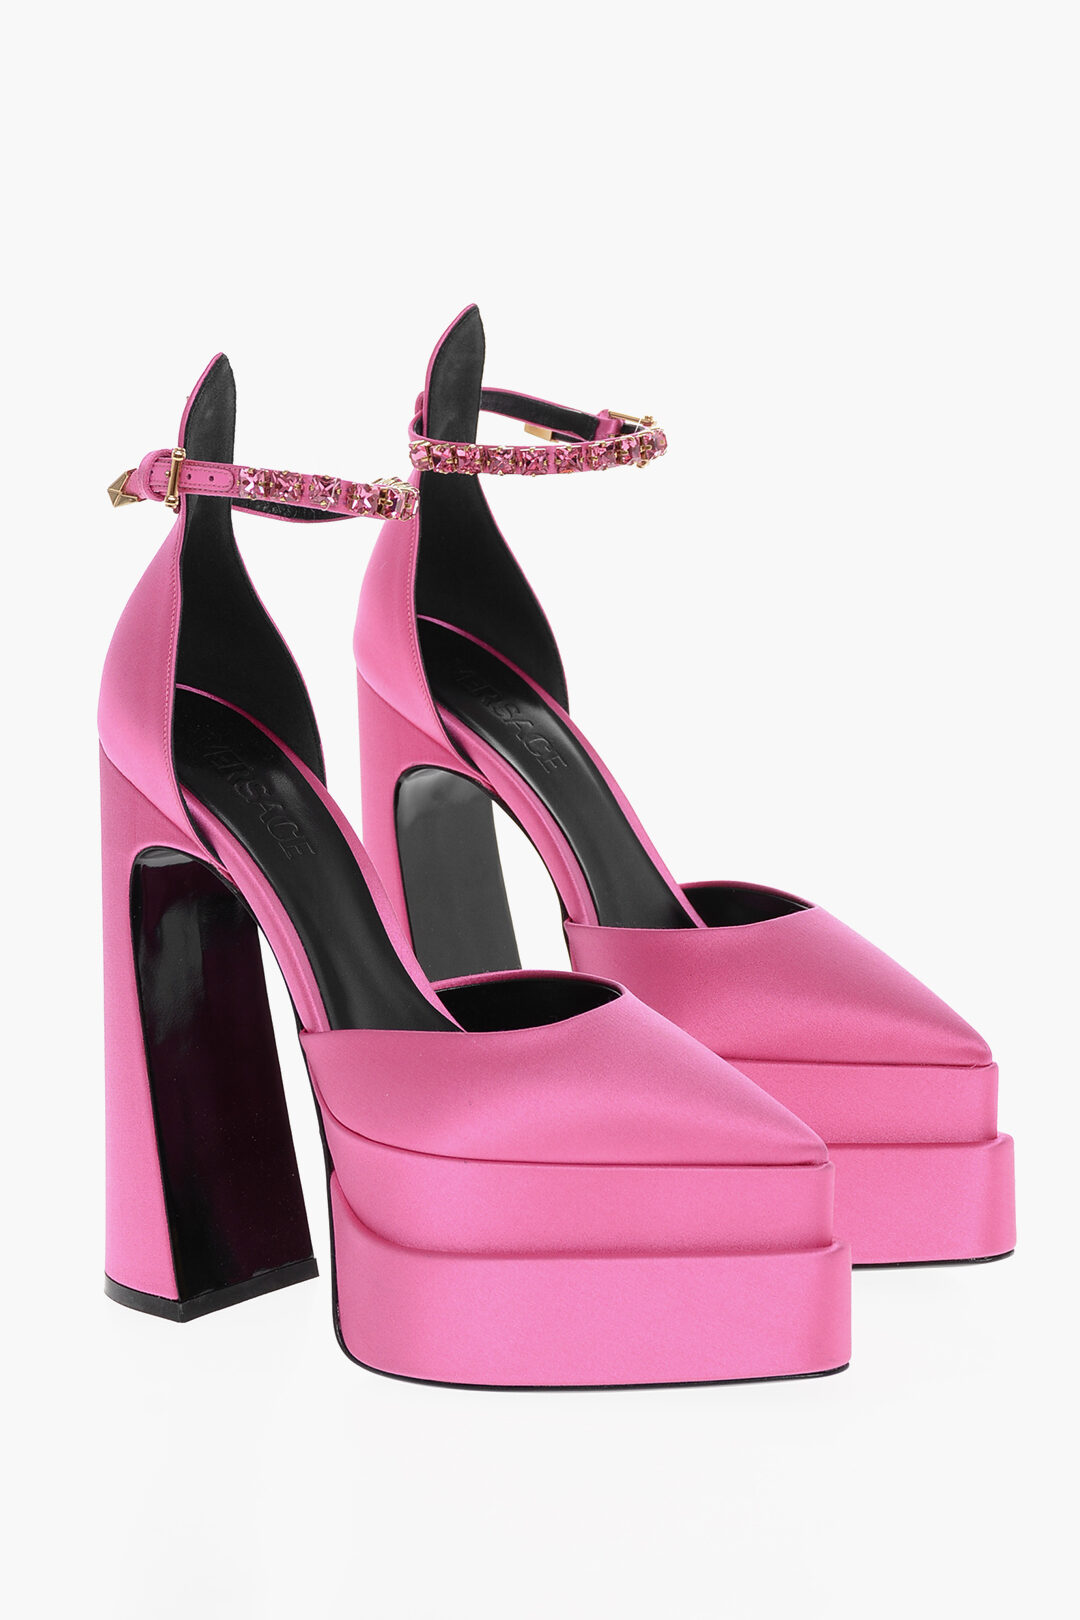 Versace Platform Heels | Heels, High heels, Platform high heels